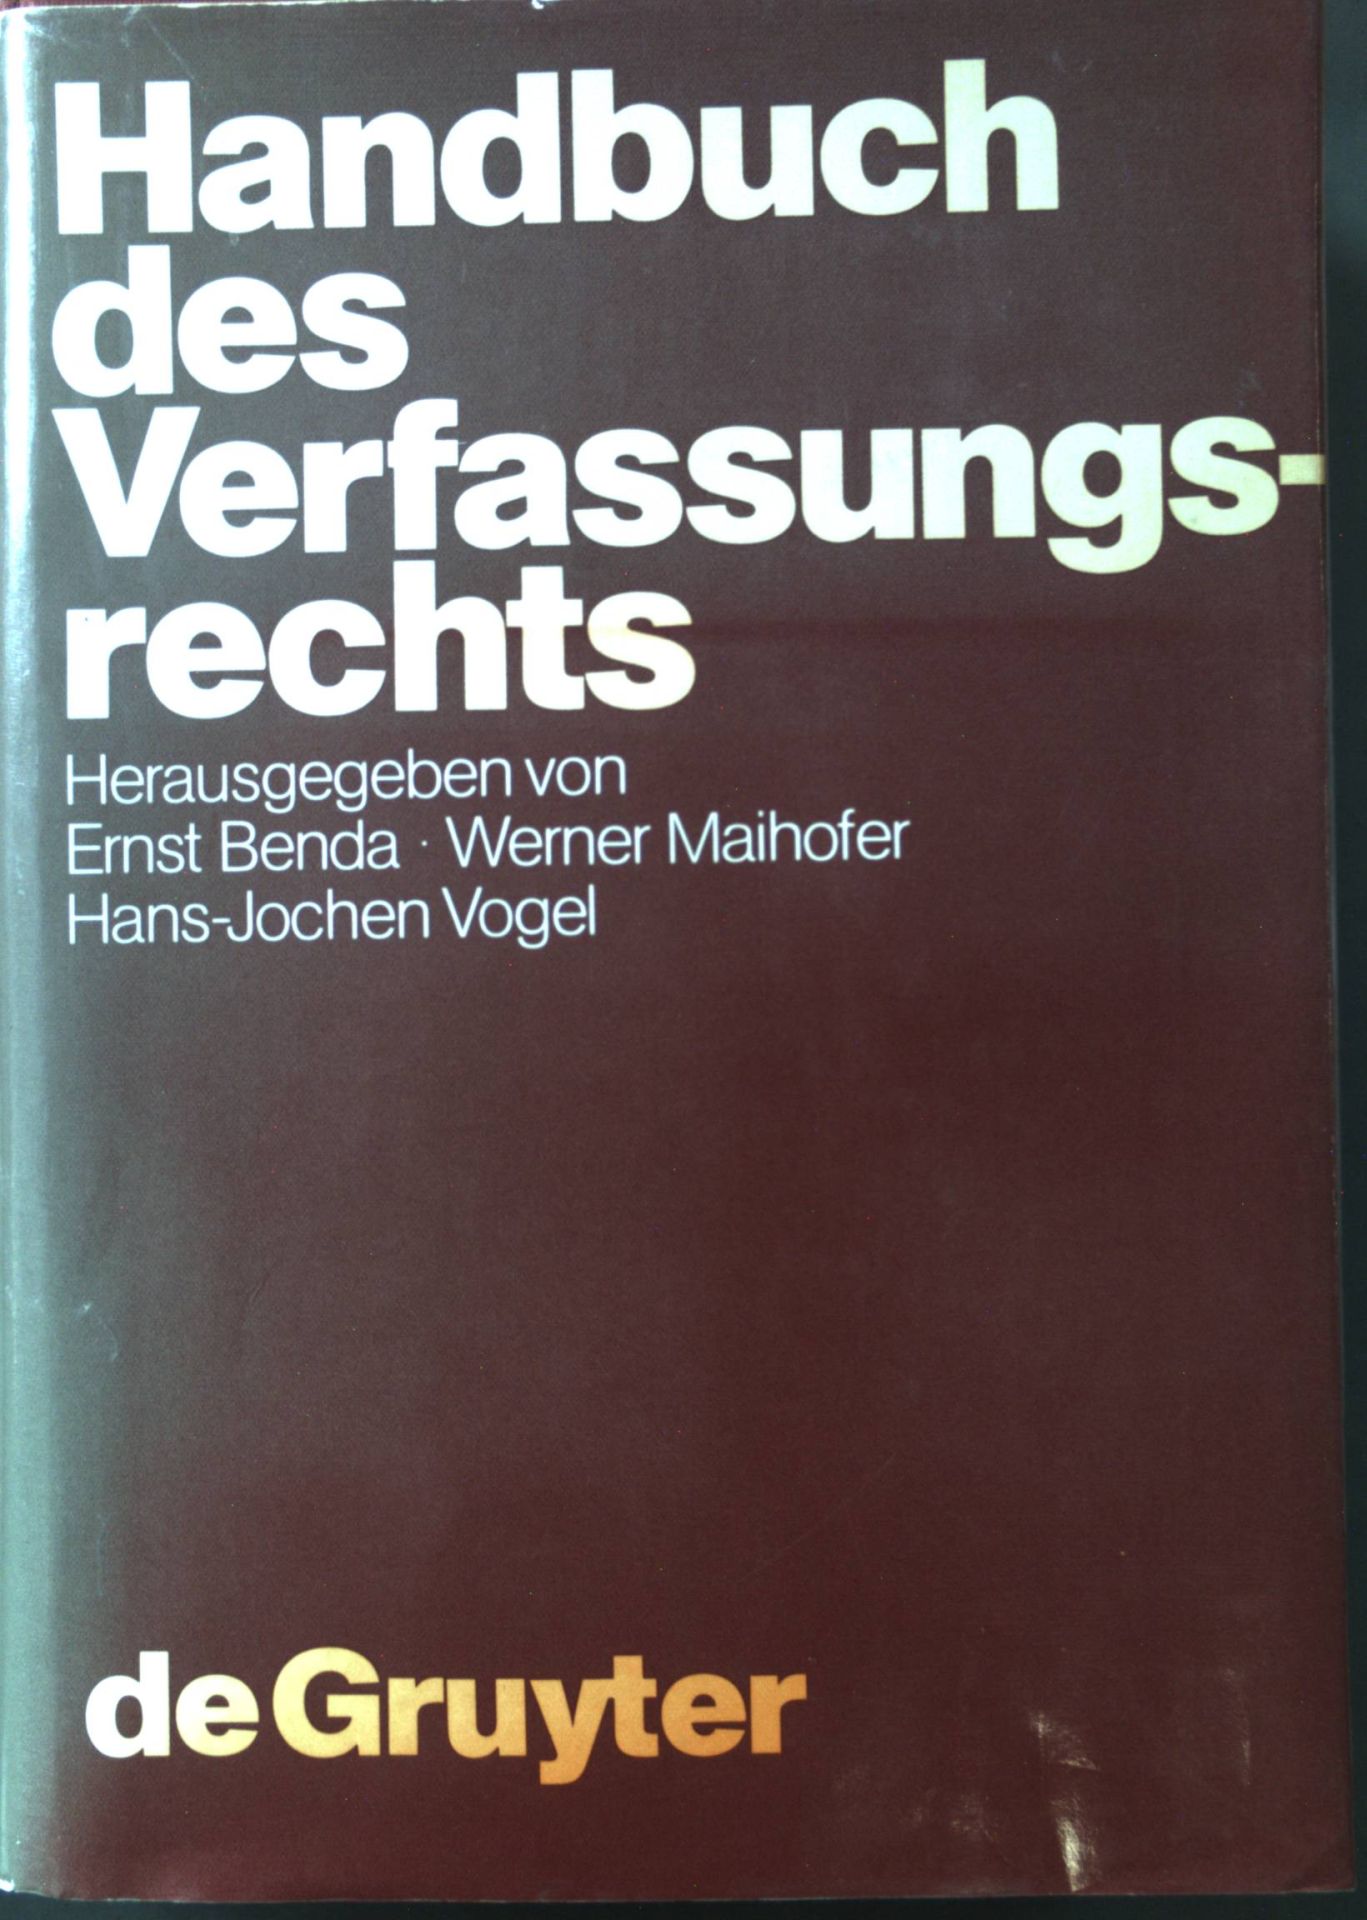 Handbuch des Verfassungsrechts der Bundesrepublik Deutschland. - Benda, Ernst (Herausgeber), Werner (hrsg.) Maihofer Hans-Jochen (Hrsg.) Vogel u. a.